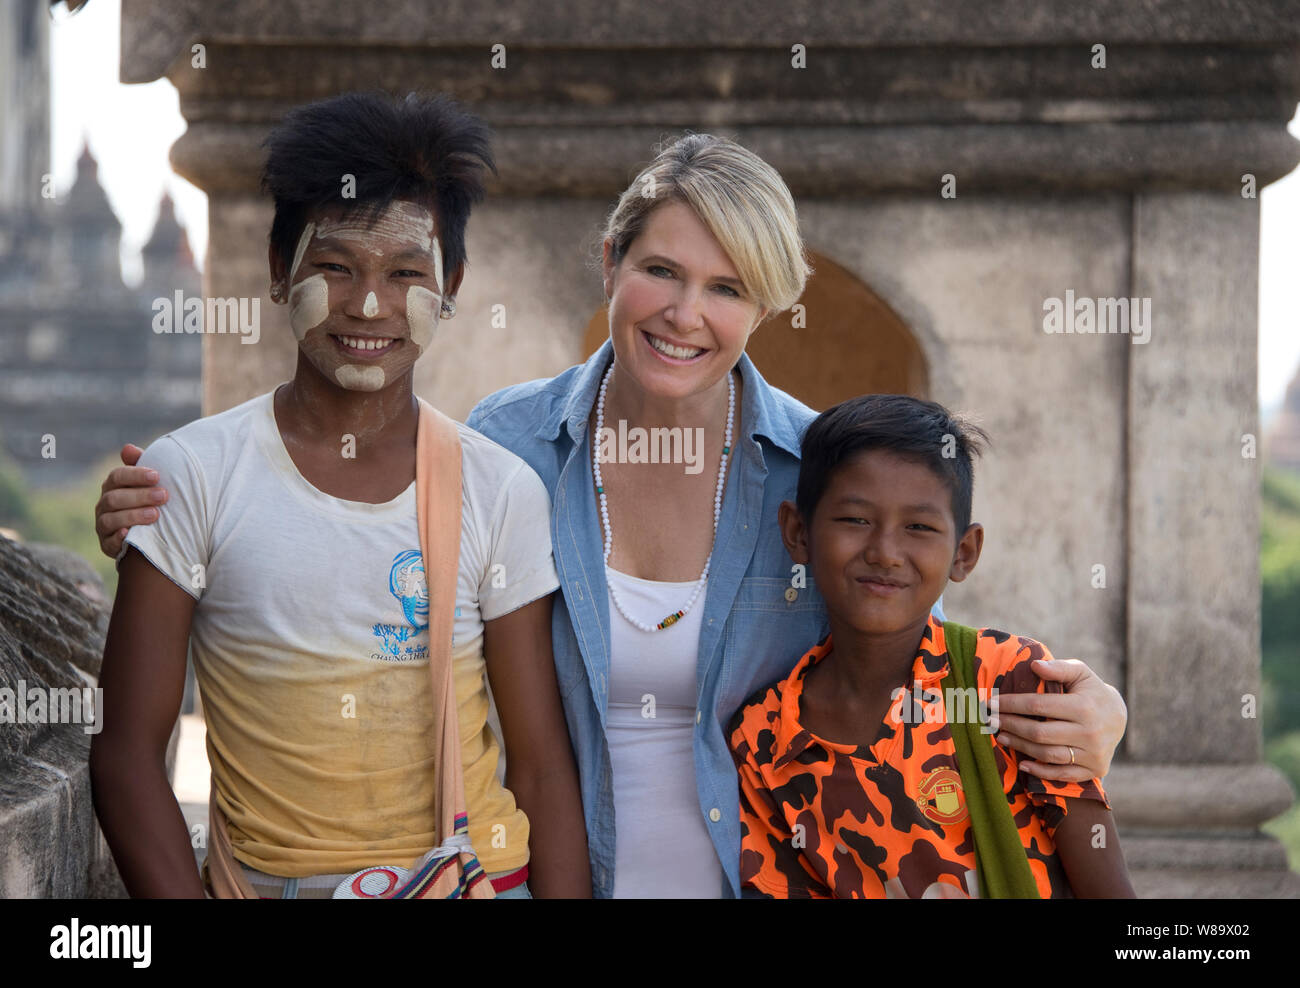 Une Happy Female Tourist et deux garçons birmans l'un avec le traditionnel Thanaka un miroir sur lequel est un cosmétique blanche coller et touristique est libéré. Banque D'Images